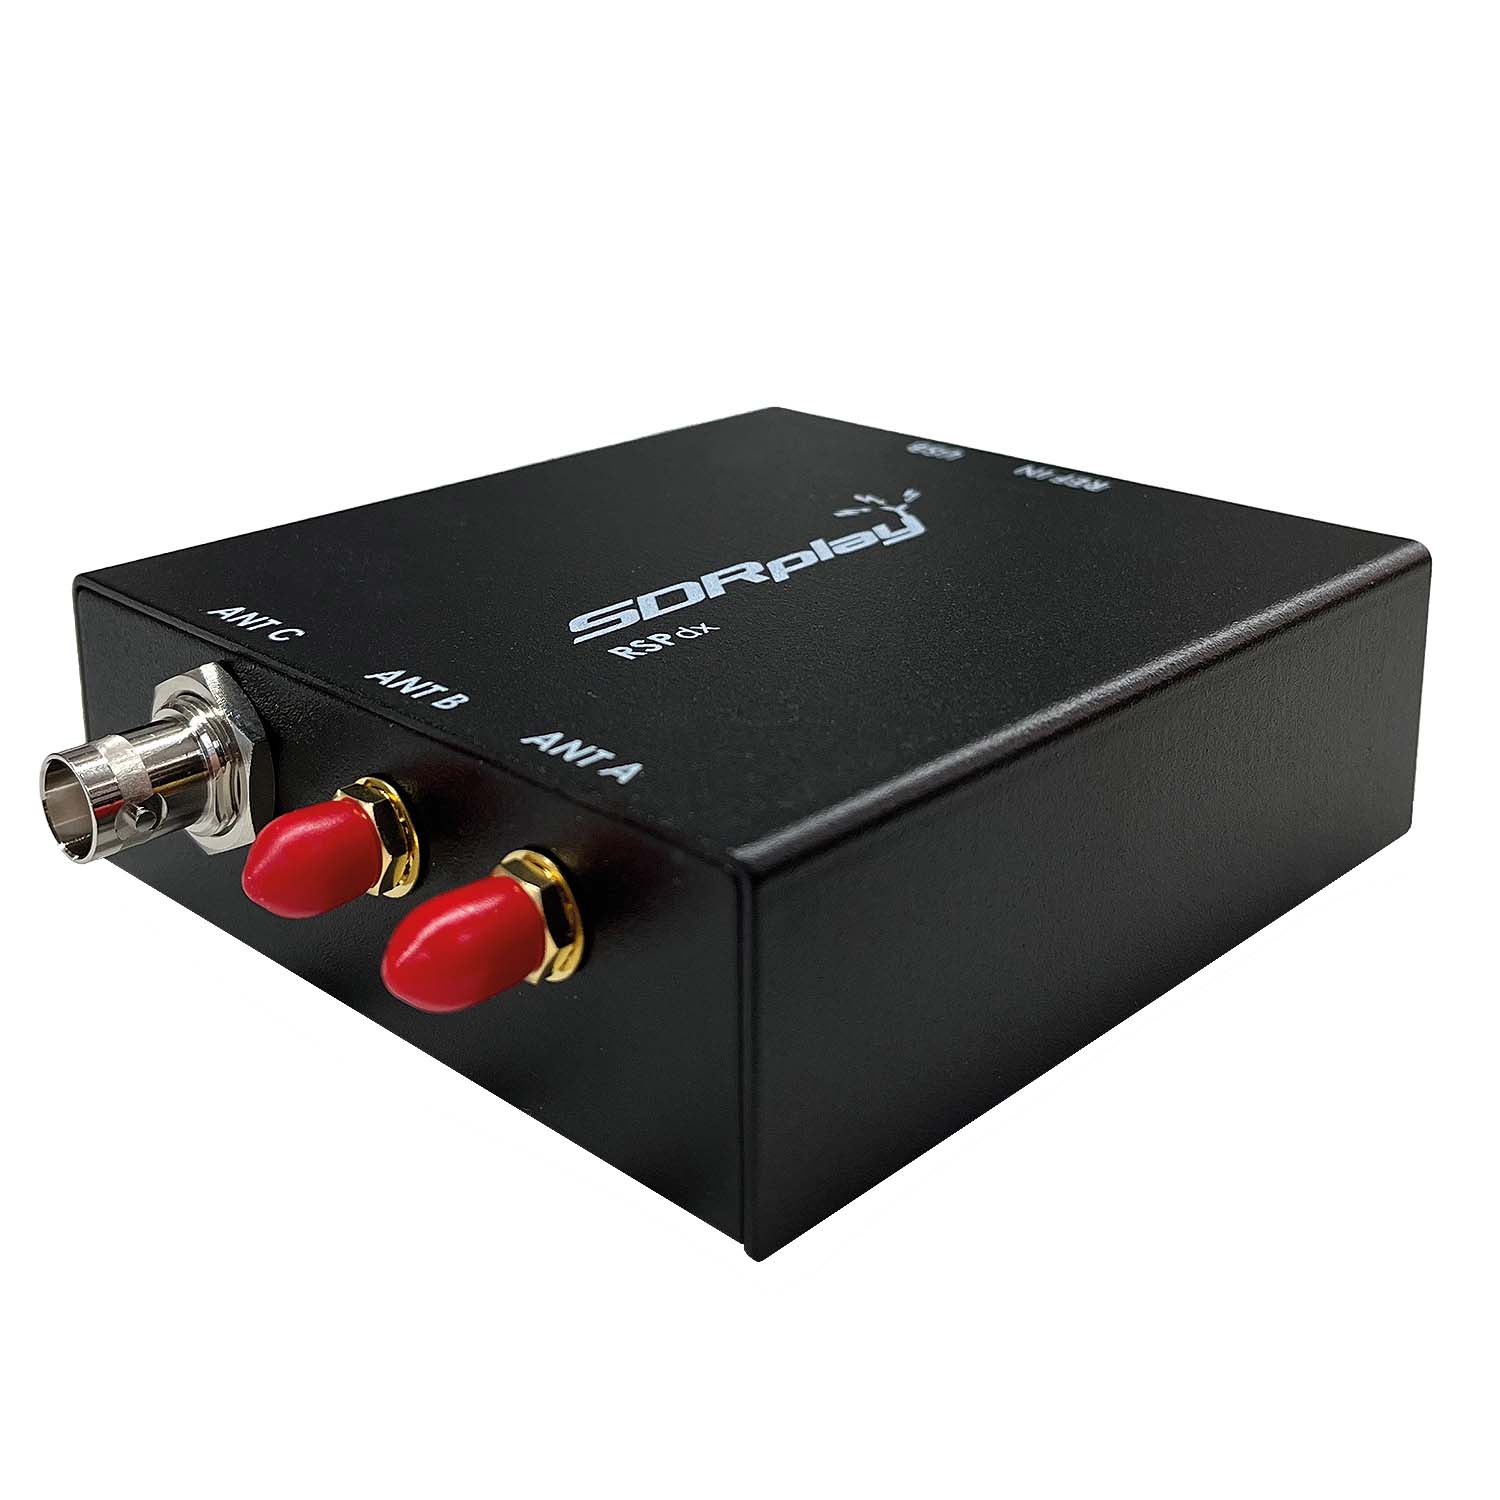 SDRplay RSPdx SDR-Empfänger 1 kHz bis 2 GHz